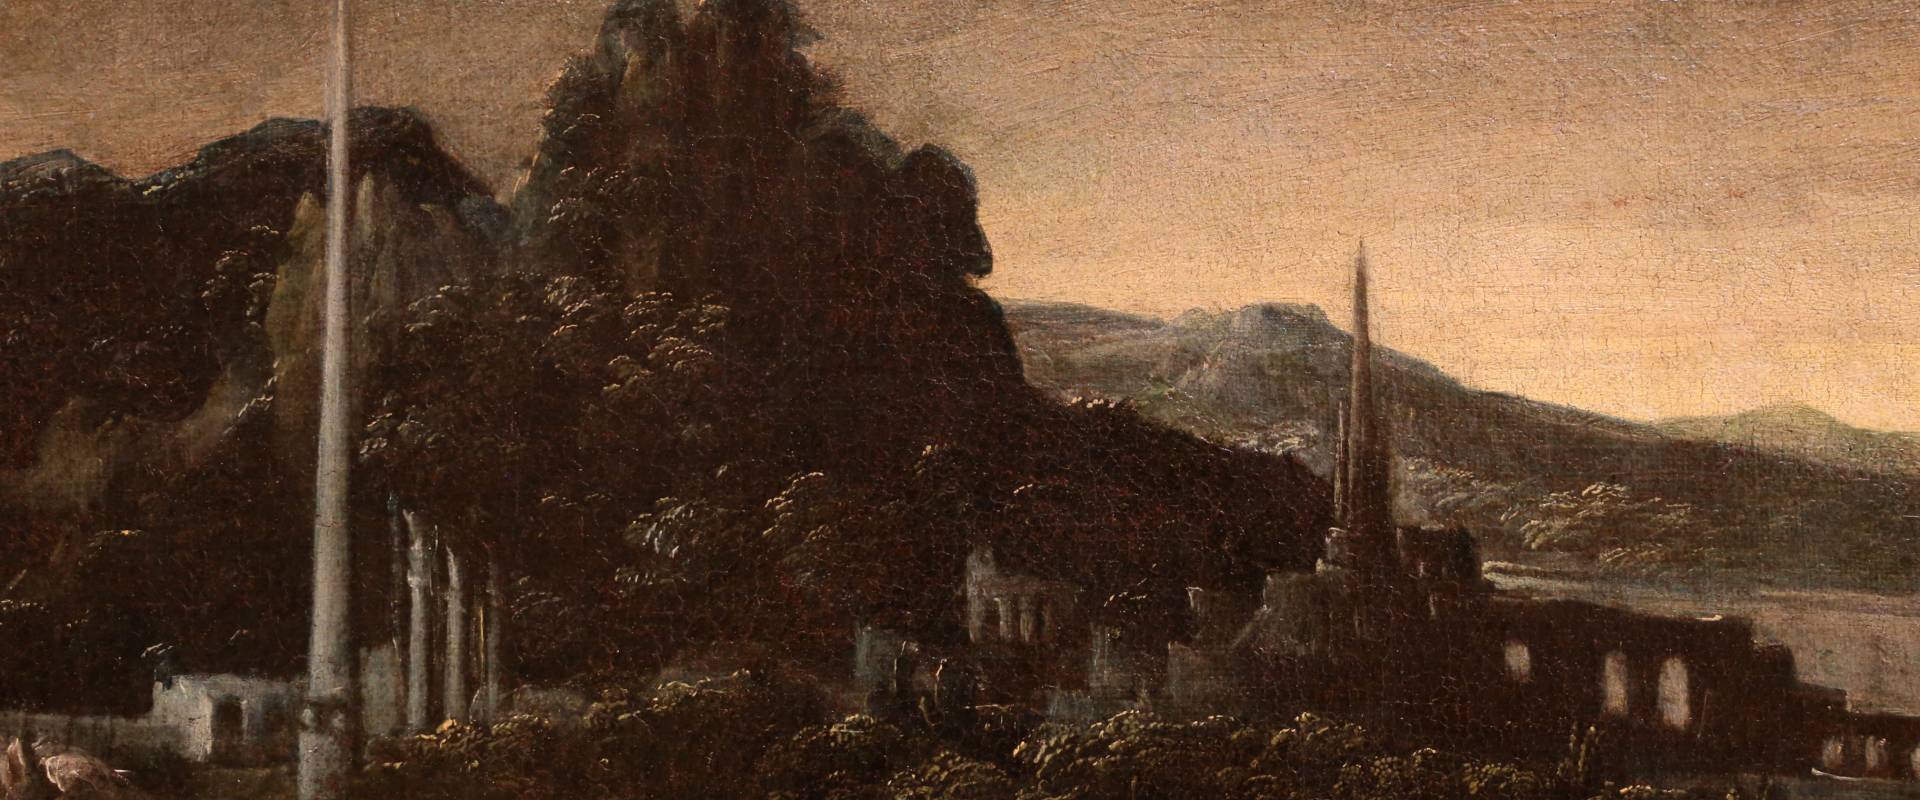 Mastelletta, ritrovamento di mosè, 1618 ca. 02 paesaggio foto di Sailko